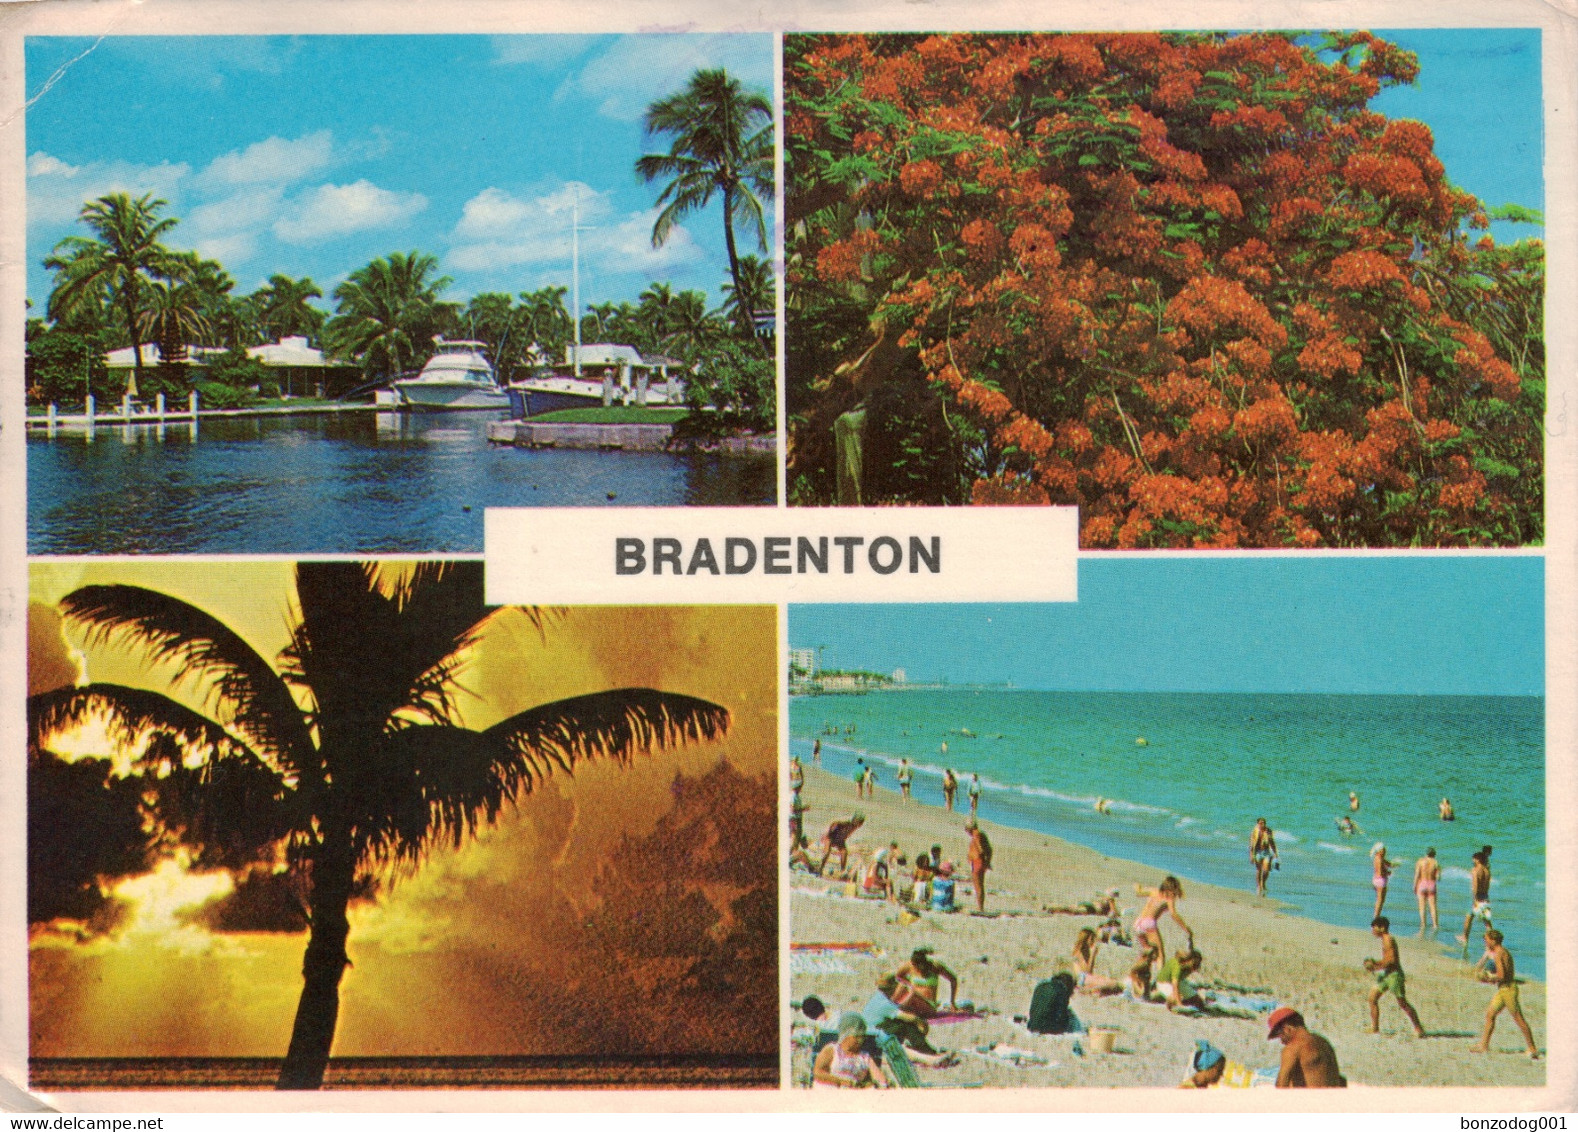 Bradenton, Florida, U.S.A. Multiview - Bradenton